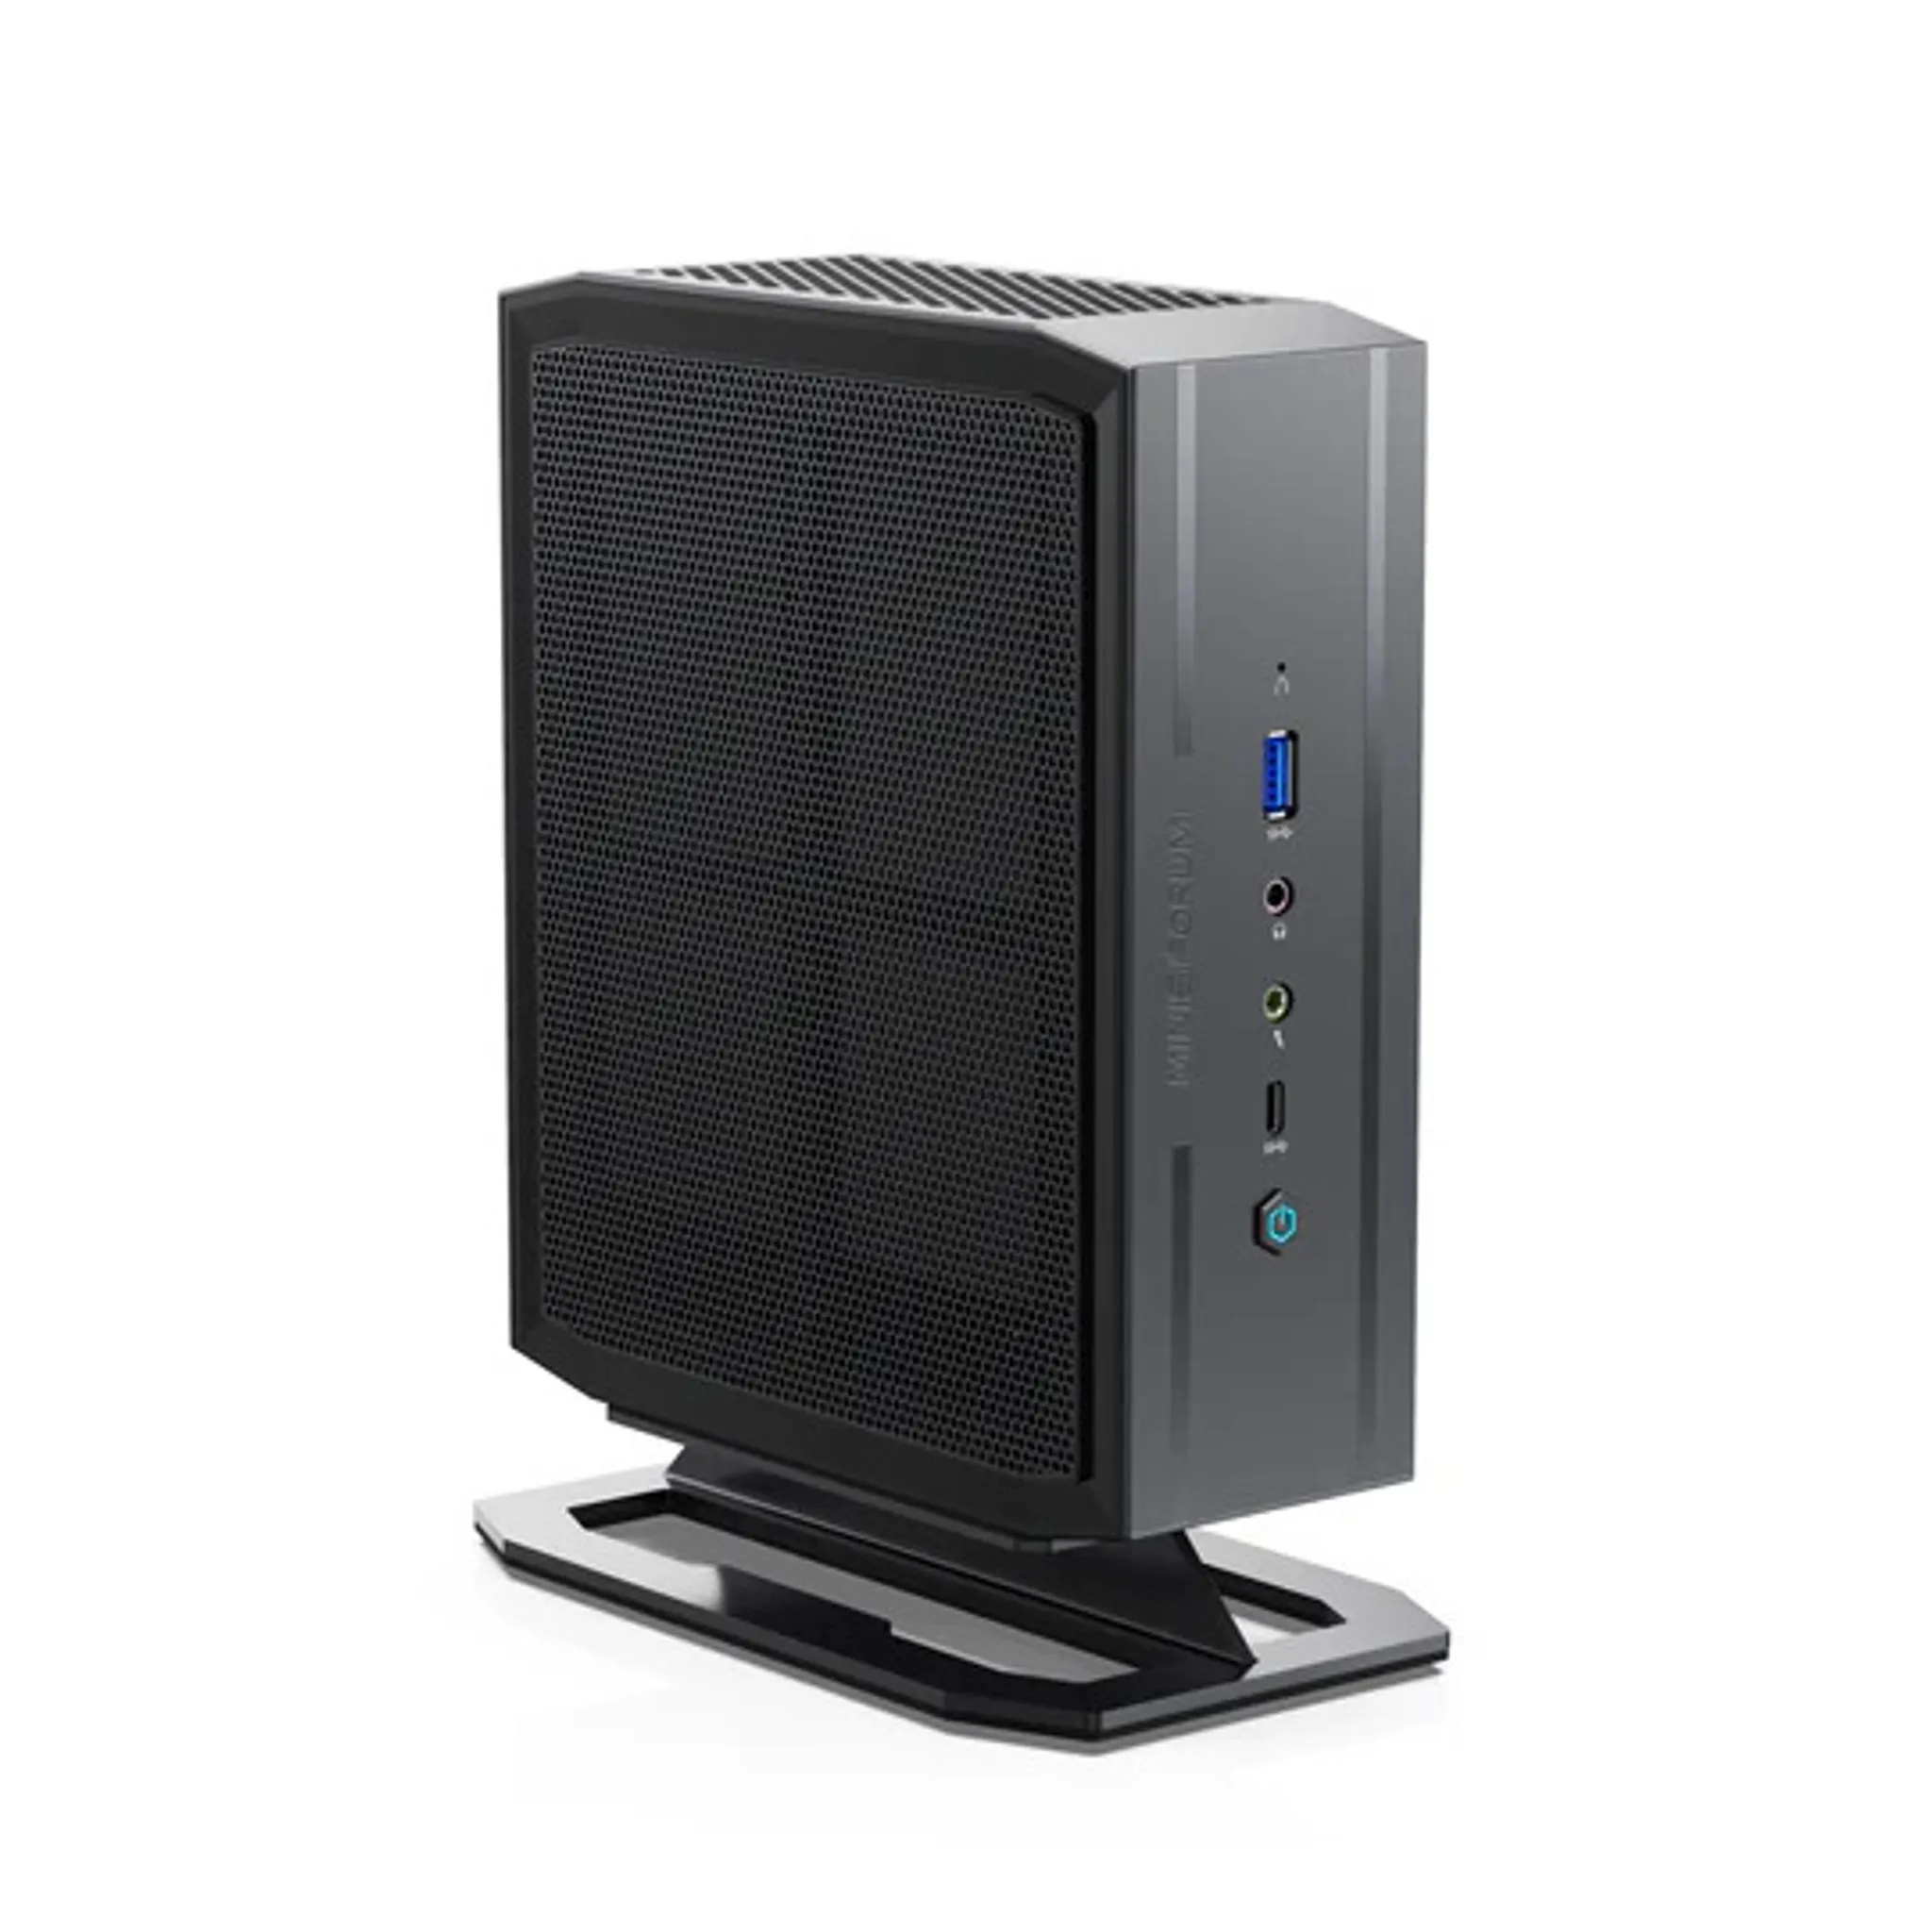 Mini PC Minisforum UM780 XTX Barebone (store.minisforum.de) –